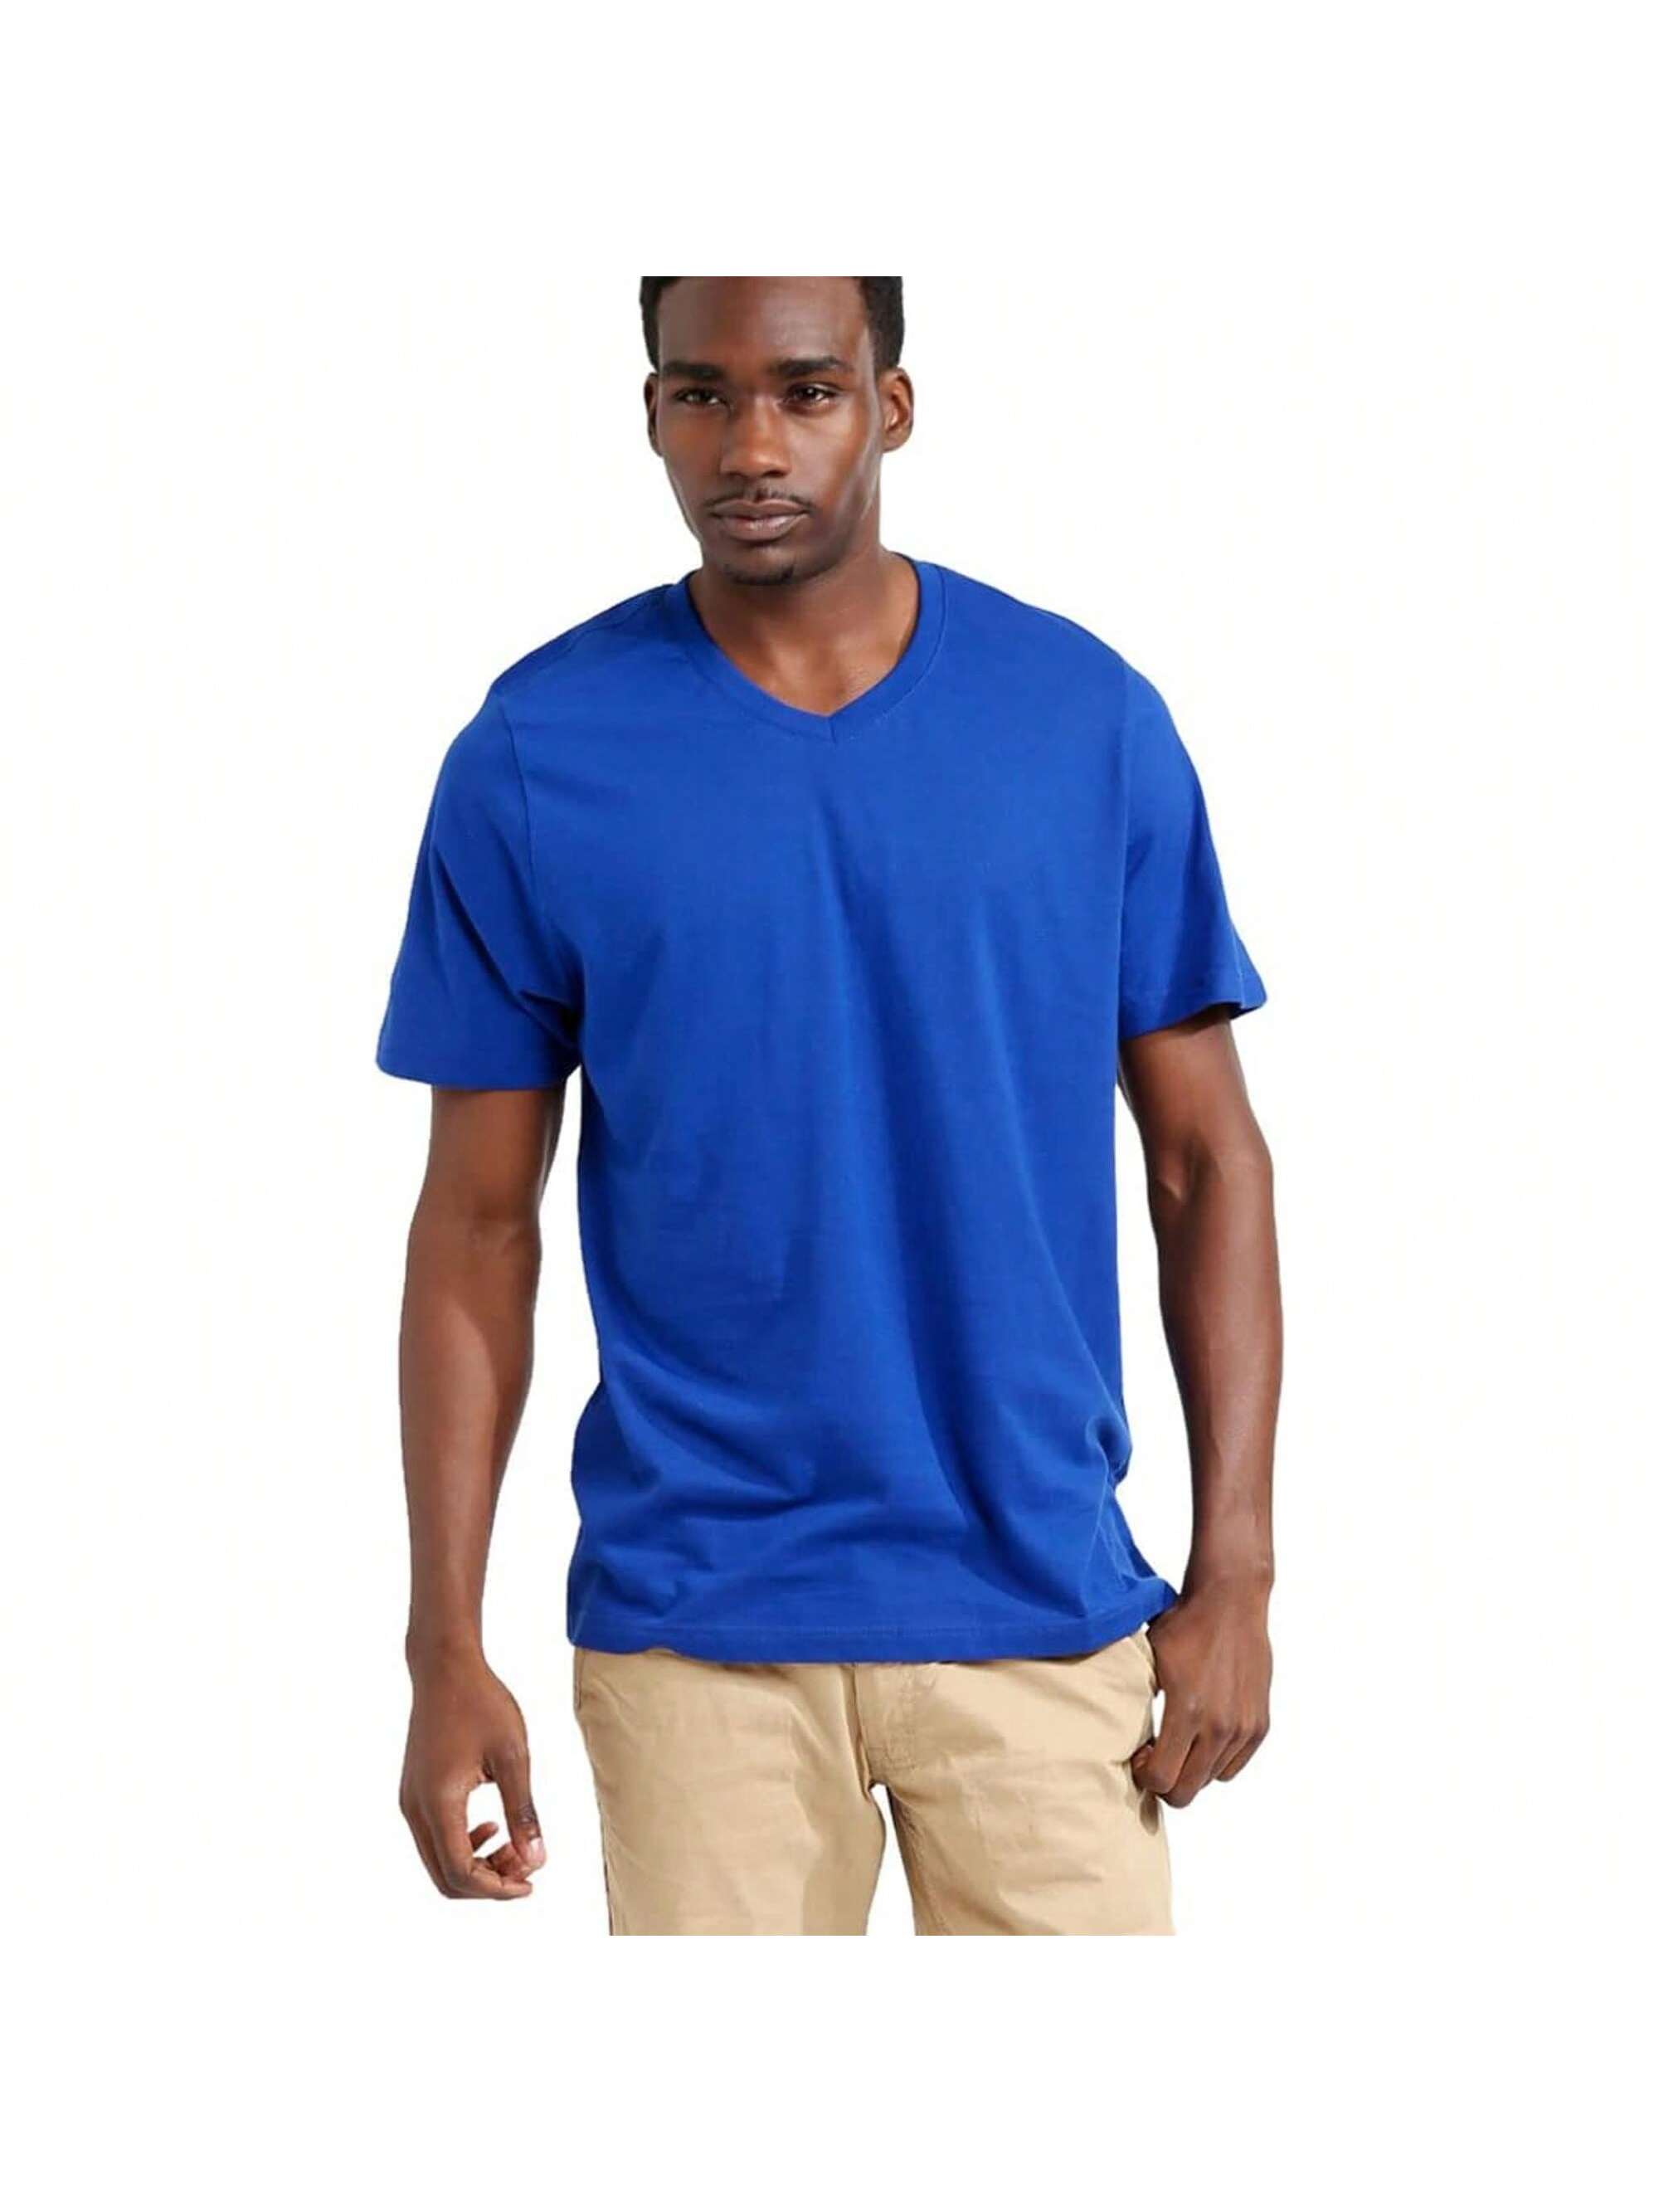 Мужская хлопковая футболка премиум-класса с v-образным вырезом Rich Cotton BLK-M, королевский перчатки sherwood code v sr blk red 13